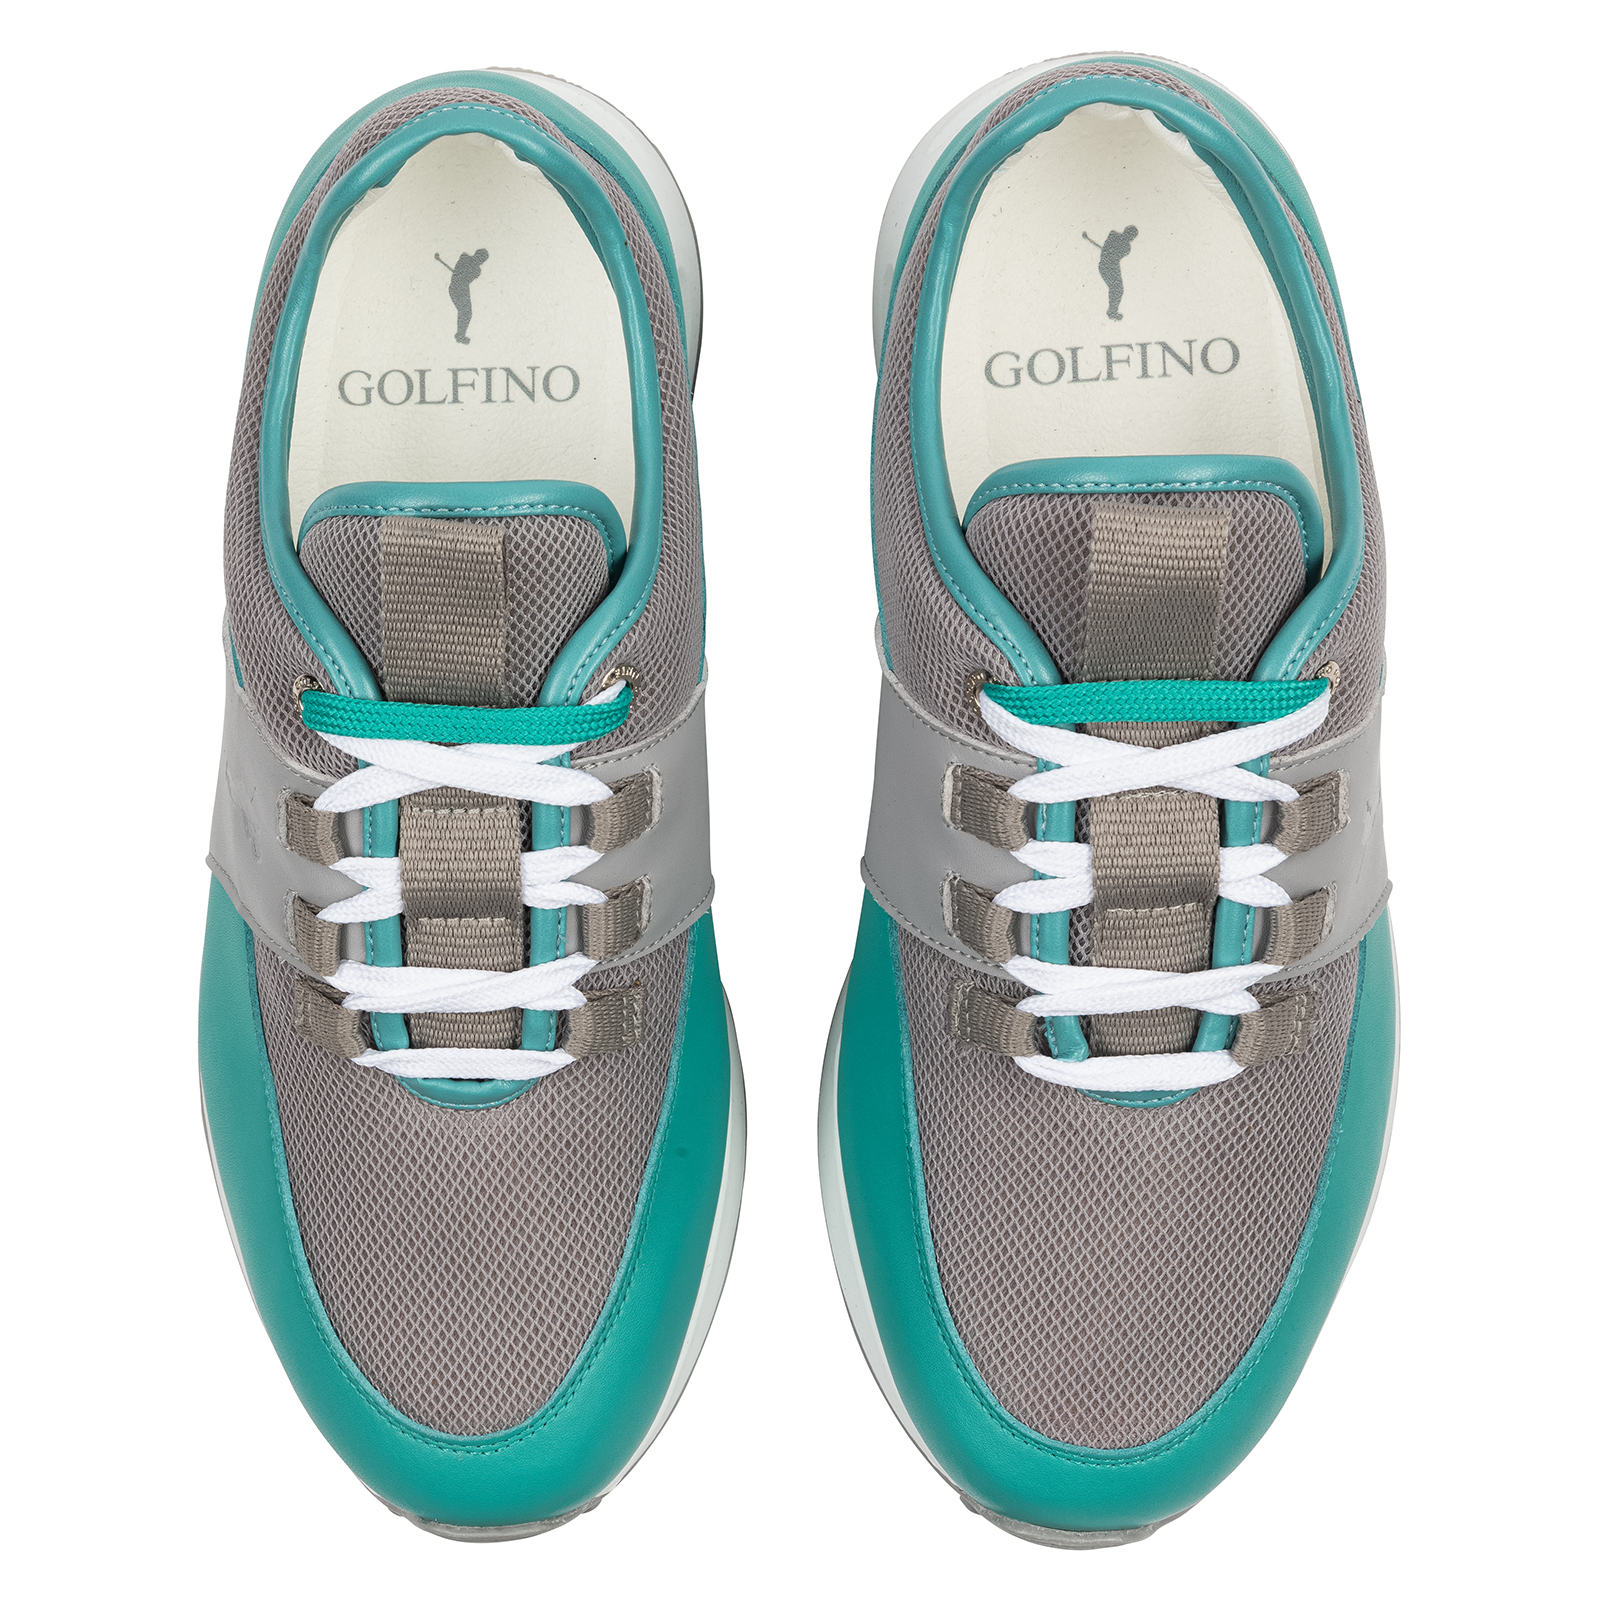 Atractivos zapatos de golf con inserción de malla para mujer